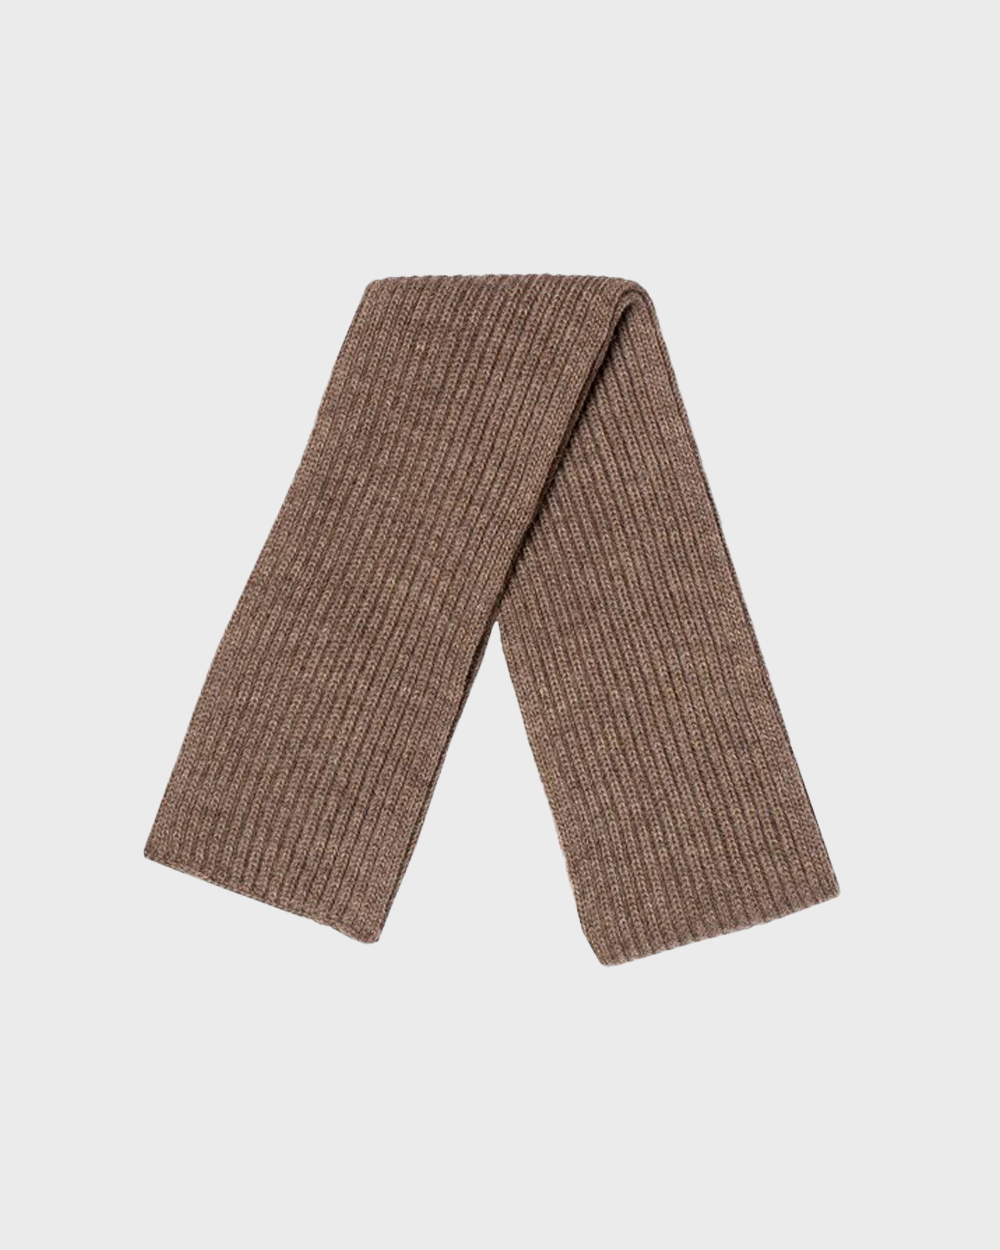 안데르센 안데르센 Short scarf (Natural taupe)